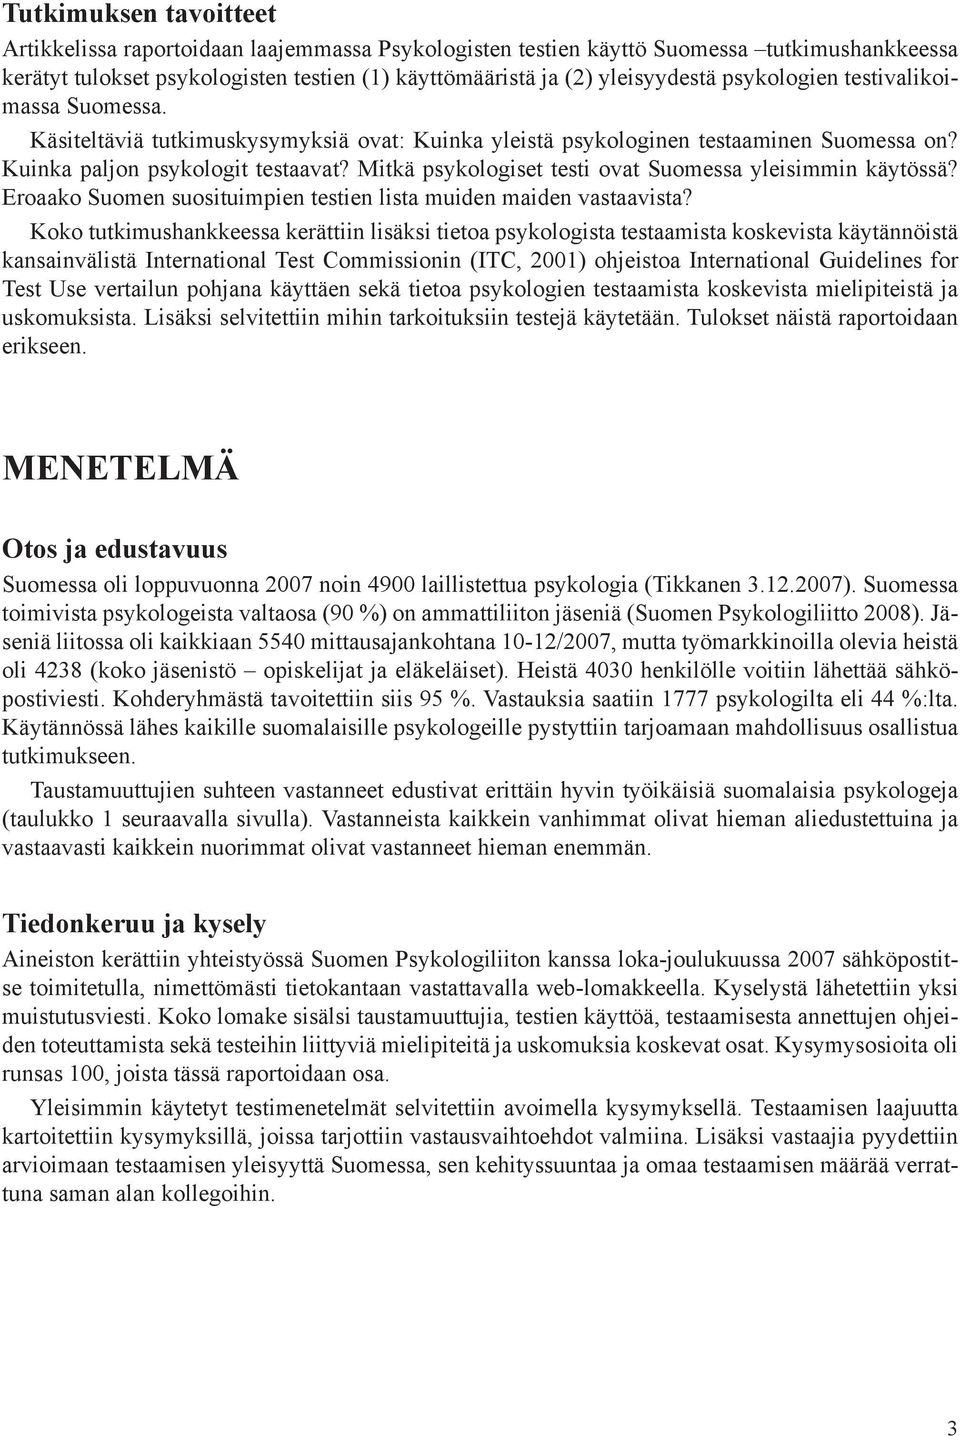 Mitkä psykologiset testi ovat Suomessa yleisimmin käytössä? Eroaako Suomen suosituimpien testien lista muiden maiden vastaavista?